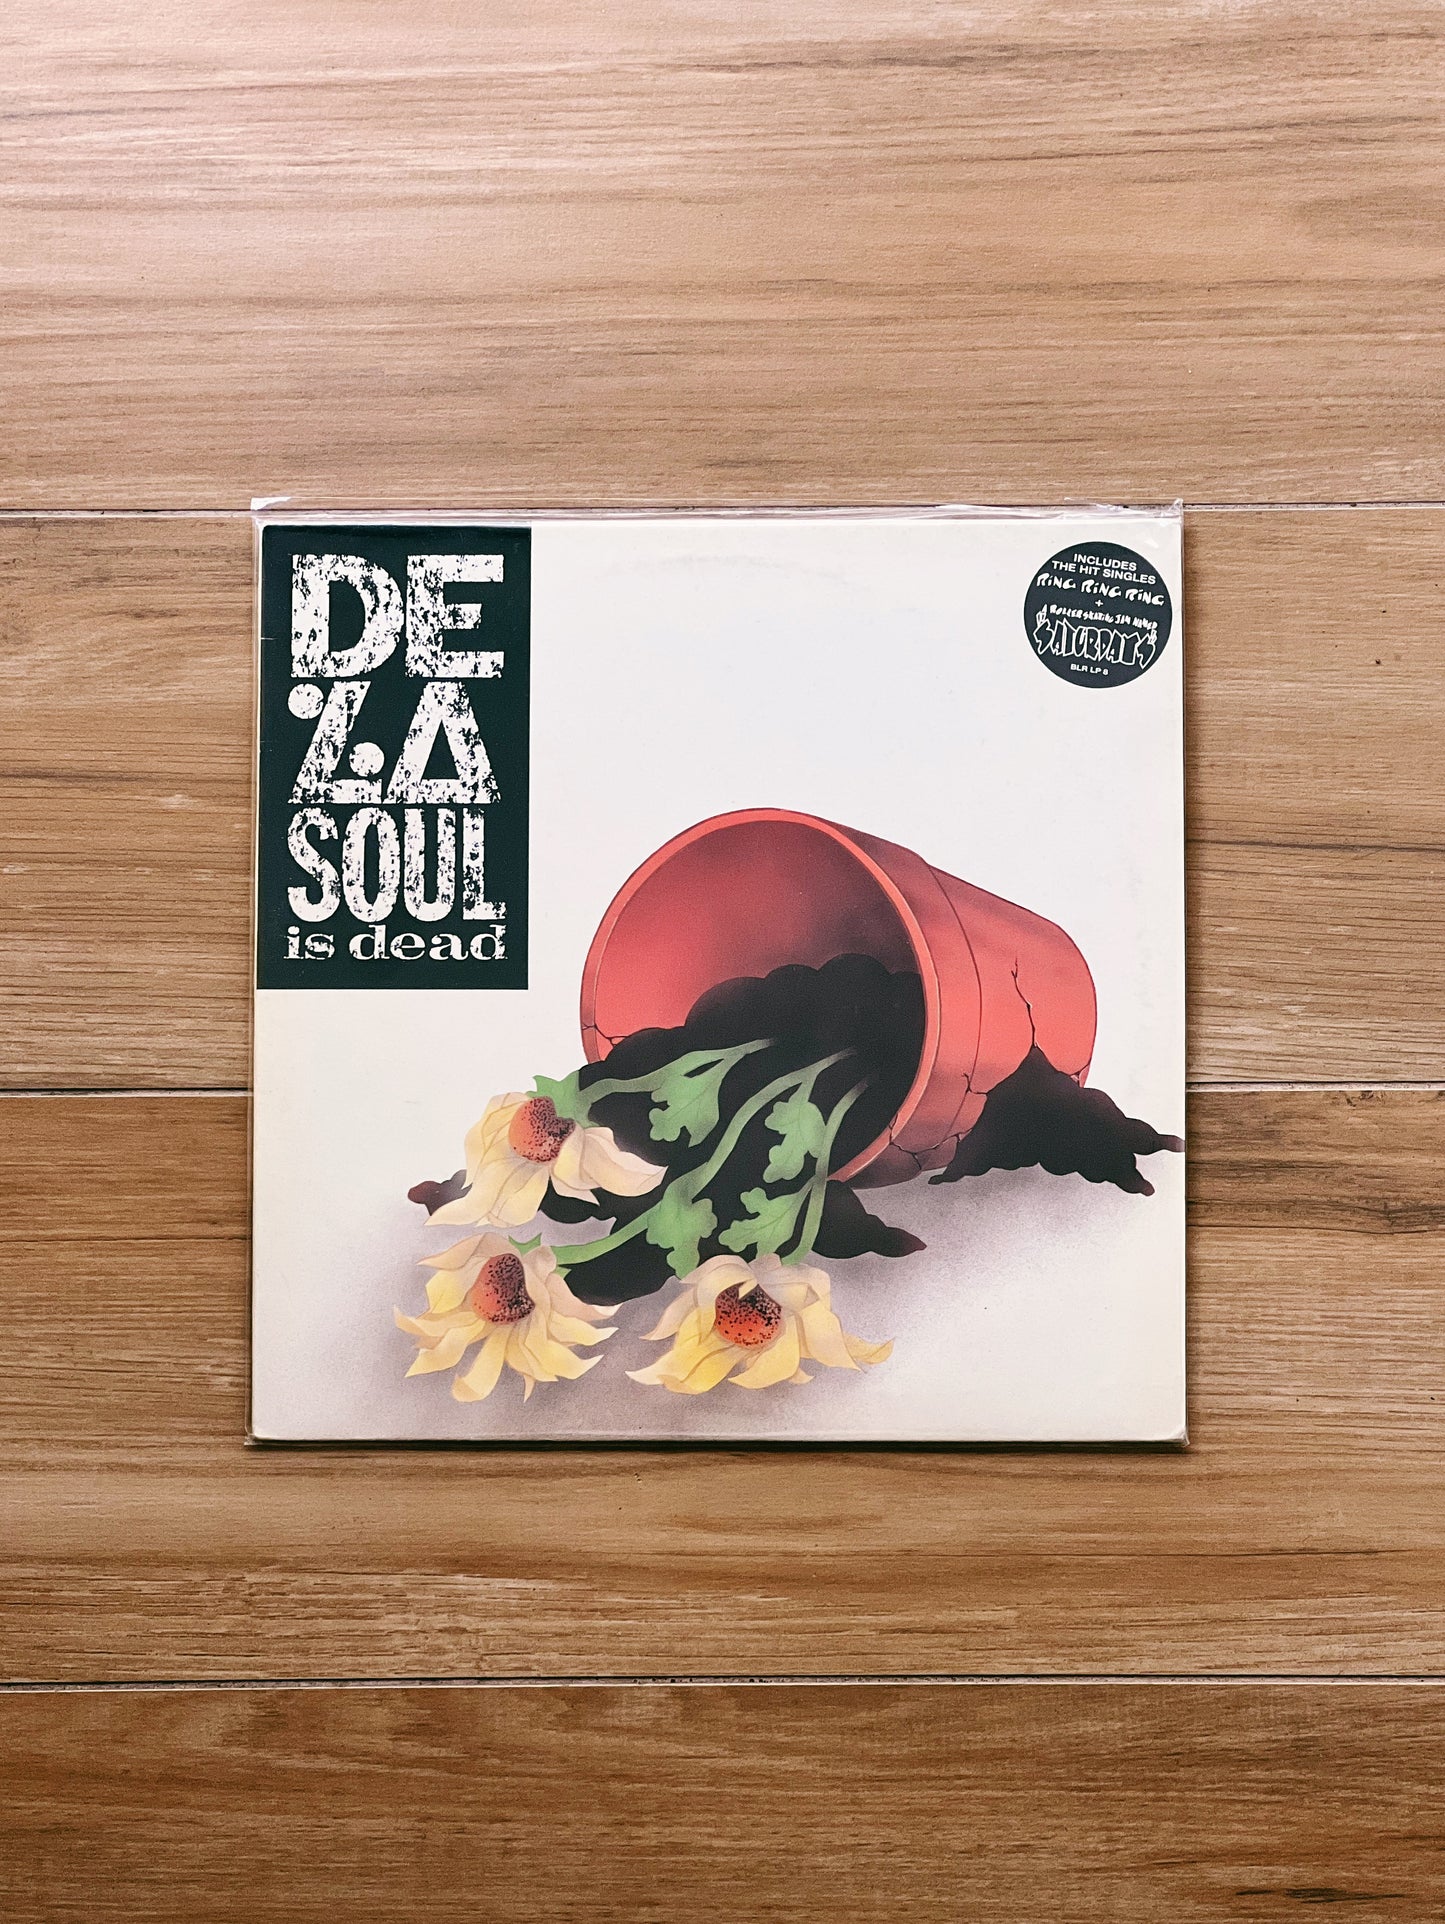 De La Soul – De La Soul Is Dead